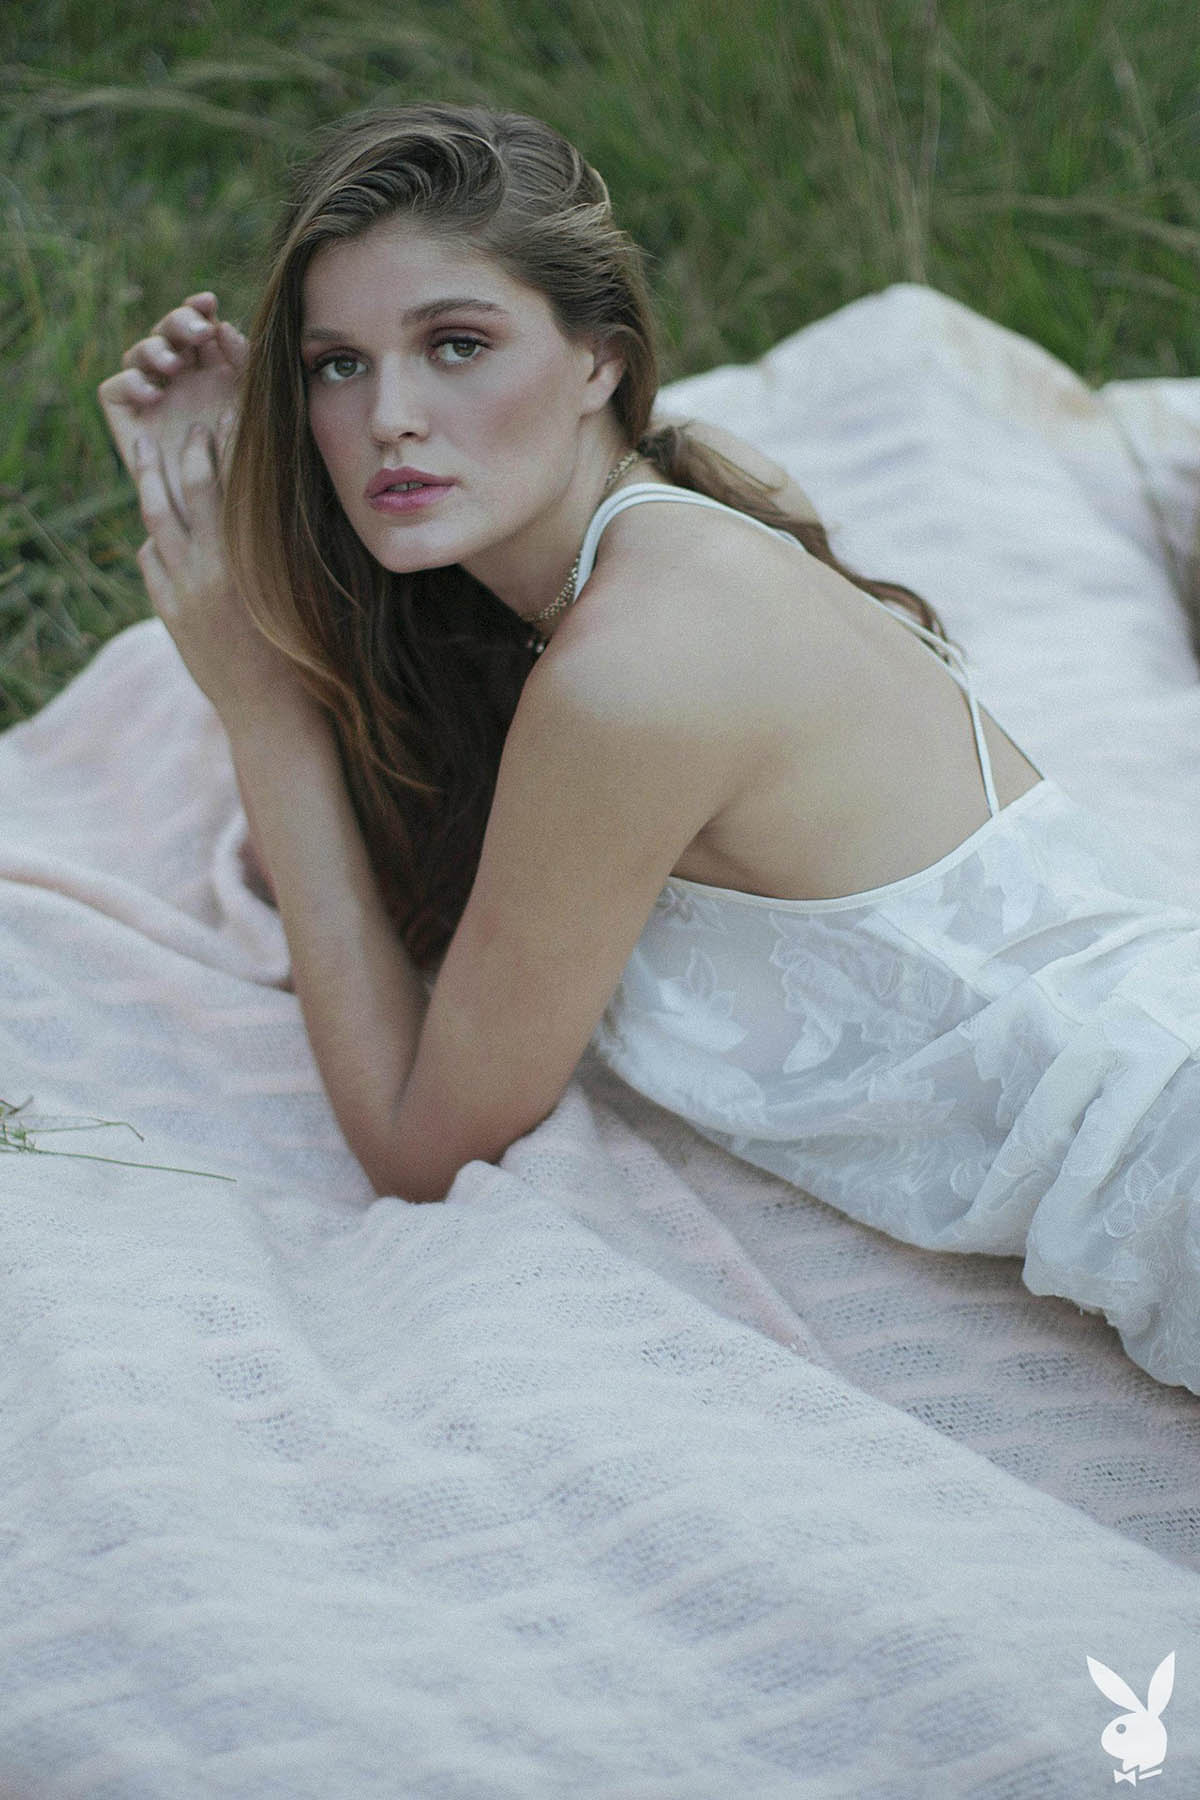 Γυμνή φωτογράφηση της ηθοποιού και μοντέλο Rebekah Underhill